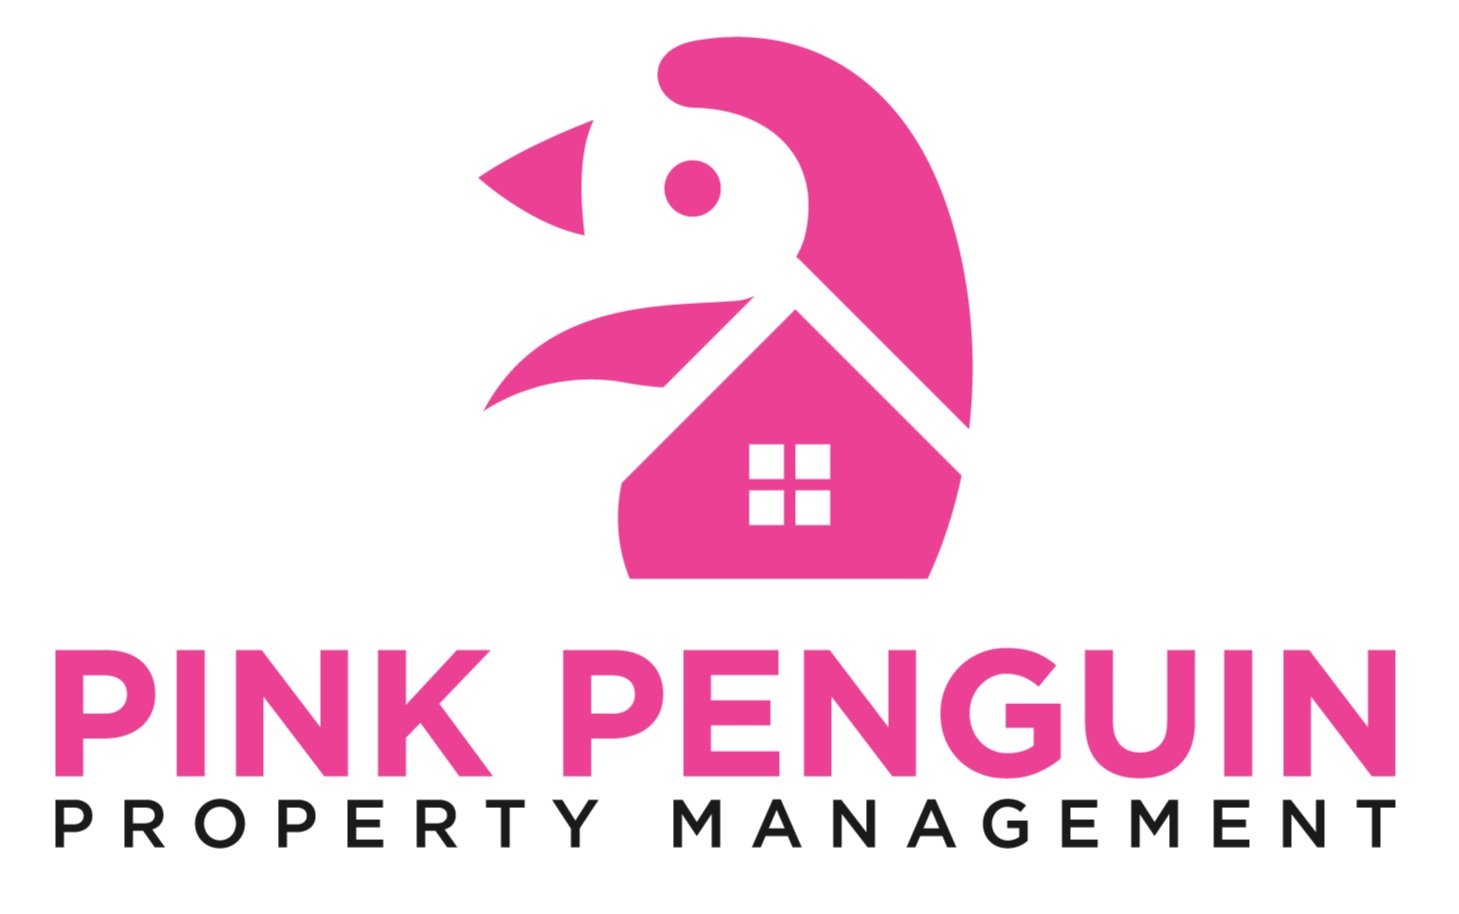 Pink Penguin Property Management